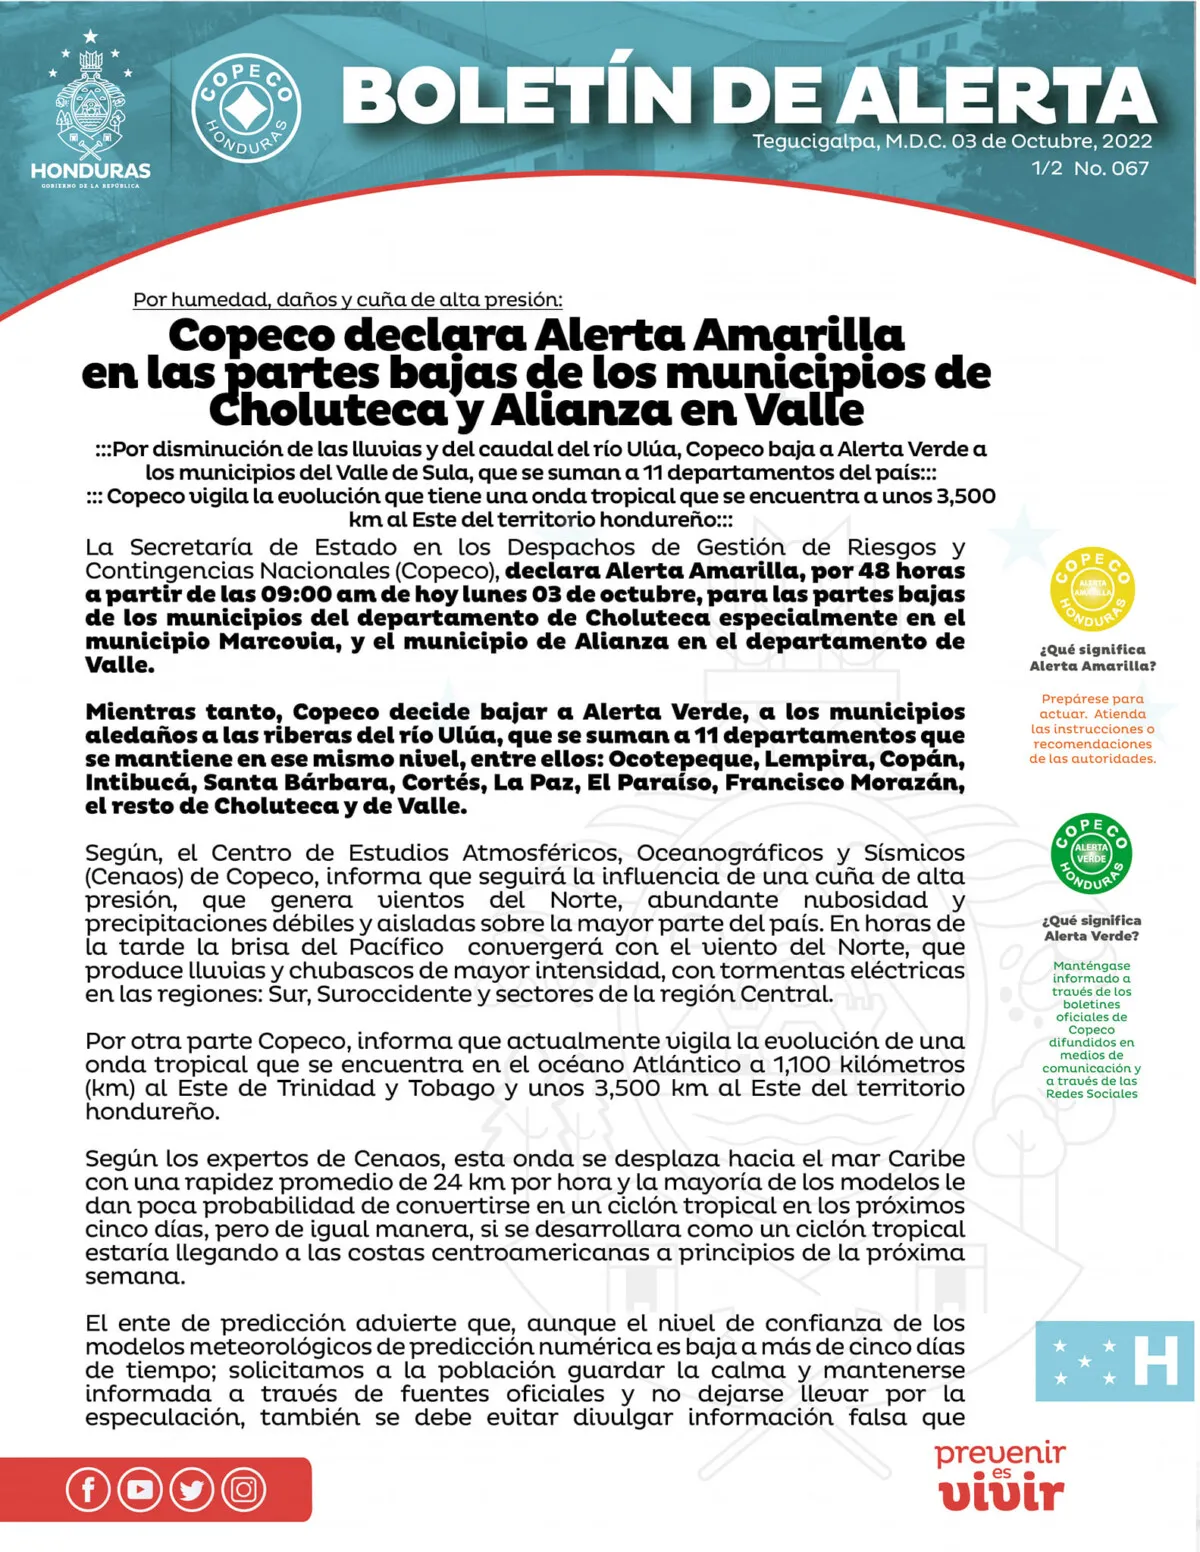 Copeco declara Alerta Amarilla en las partes bajas de los municipios de Choluteca y Alianza en Valle 01